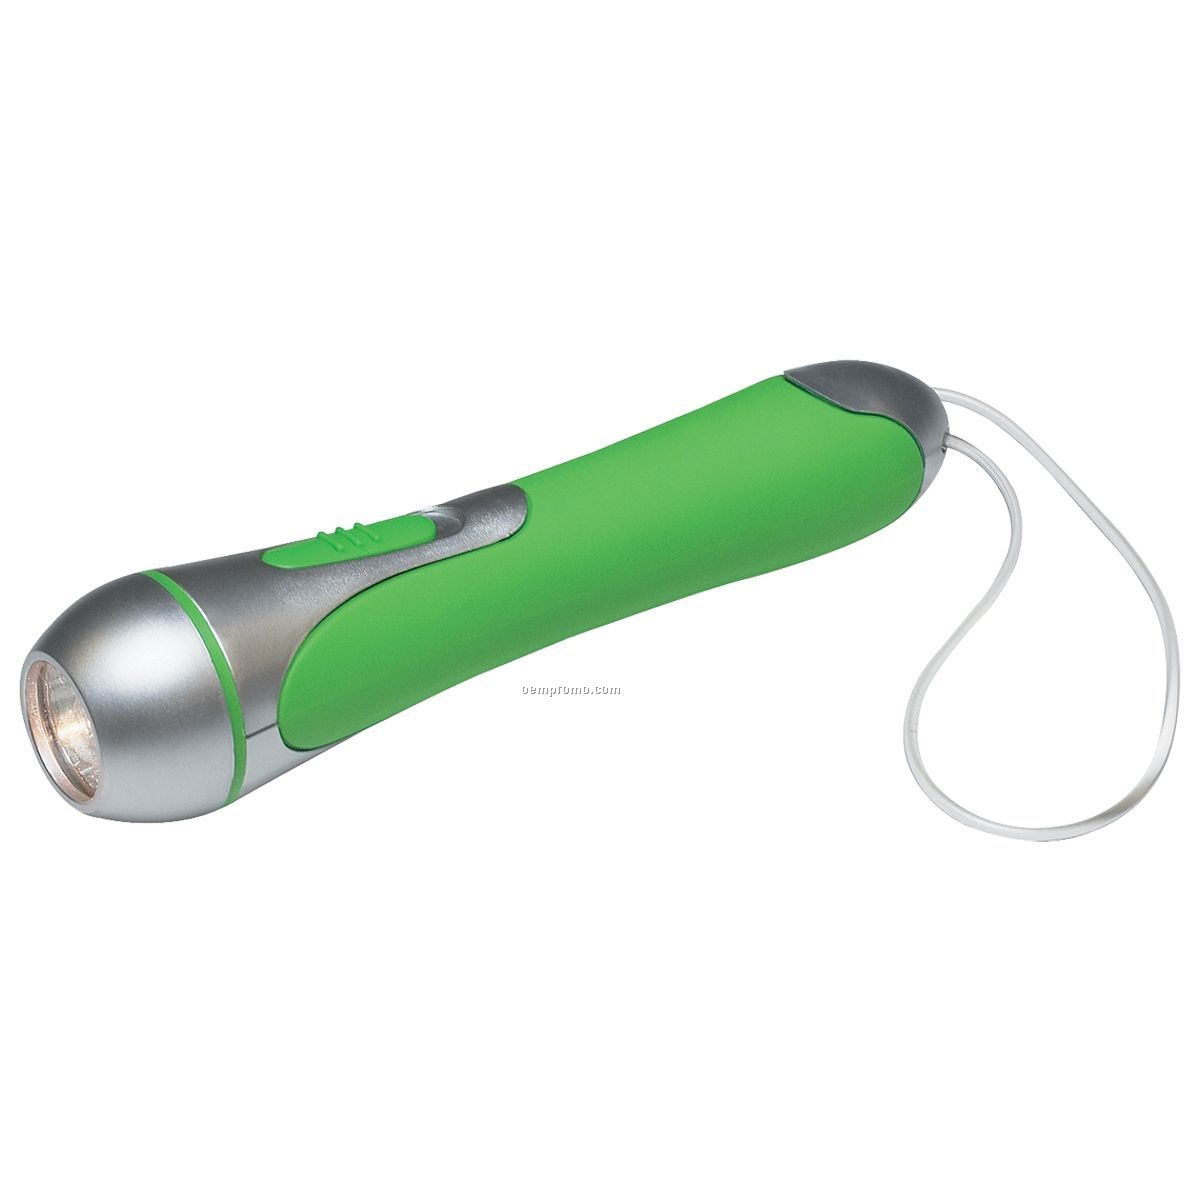 Tech Green Flashlight W/ Rubber Grip